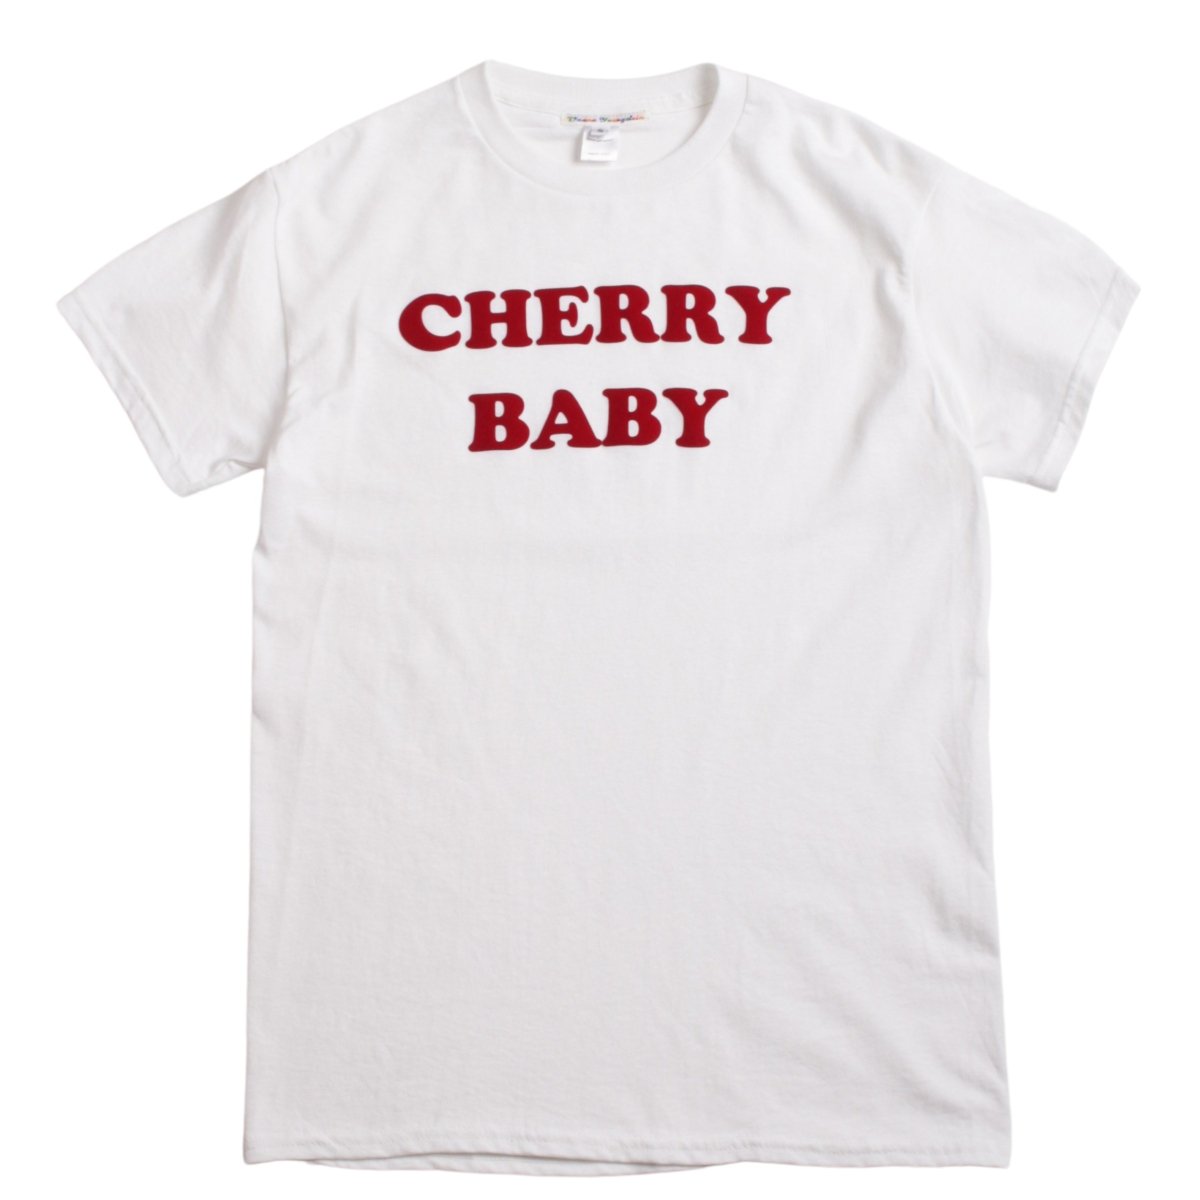 Cherry Baby Tee【White/Red】